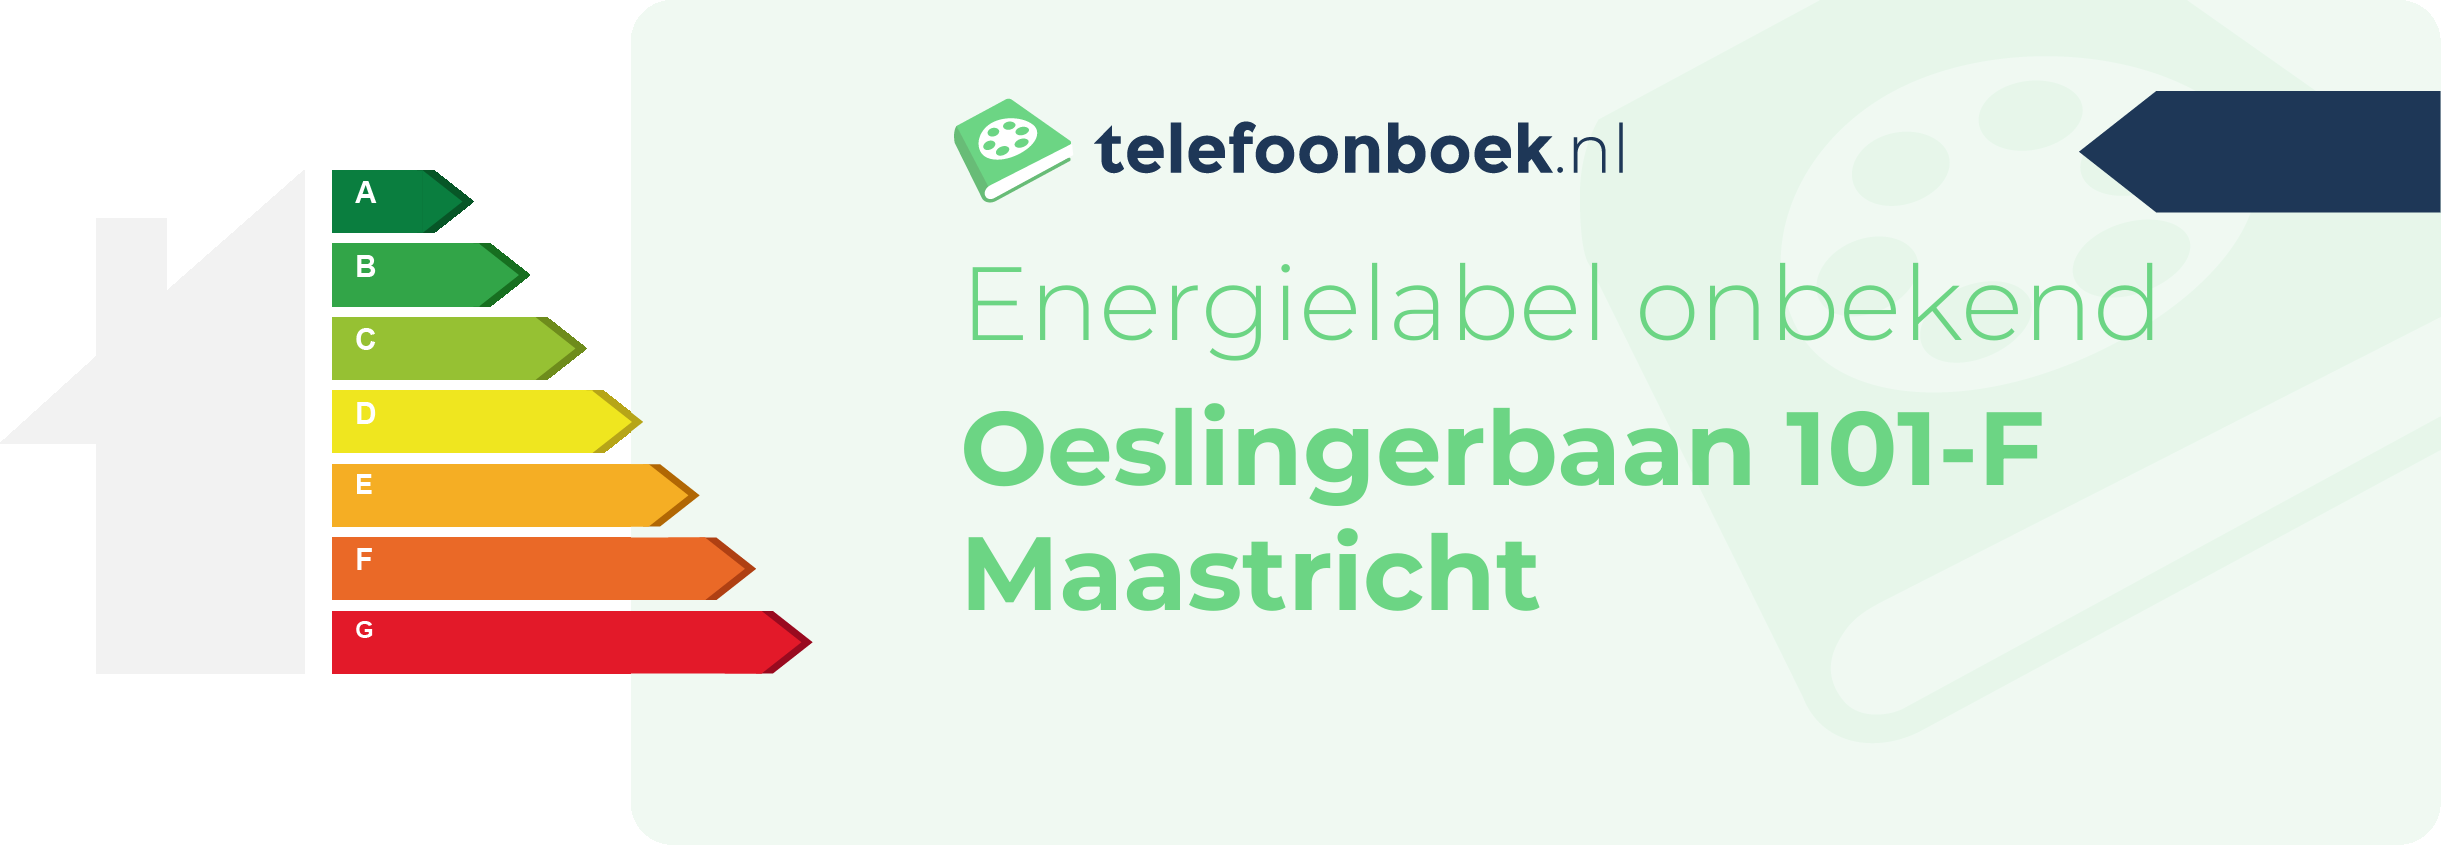 Energielabel Oeslingerbaan 101-F Maastricht